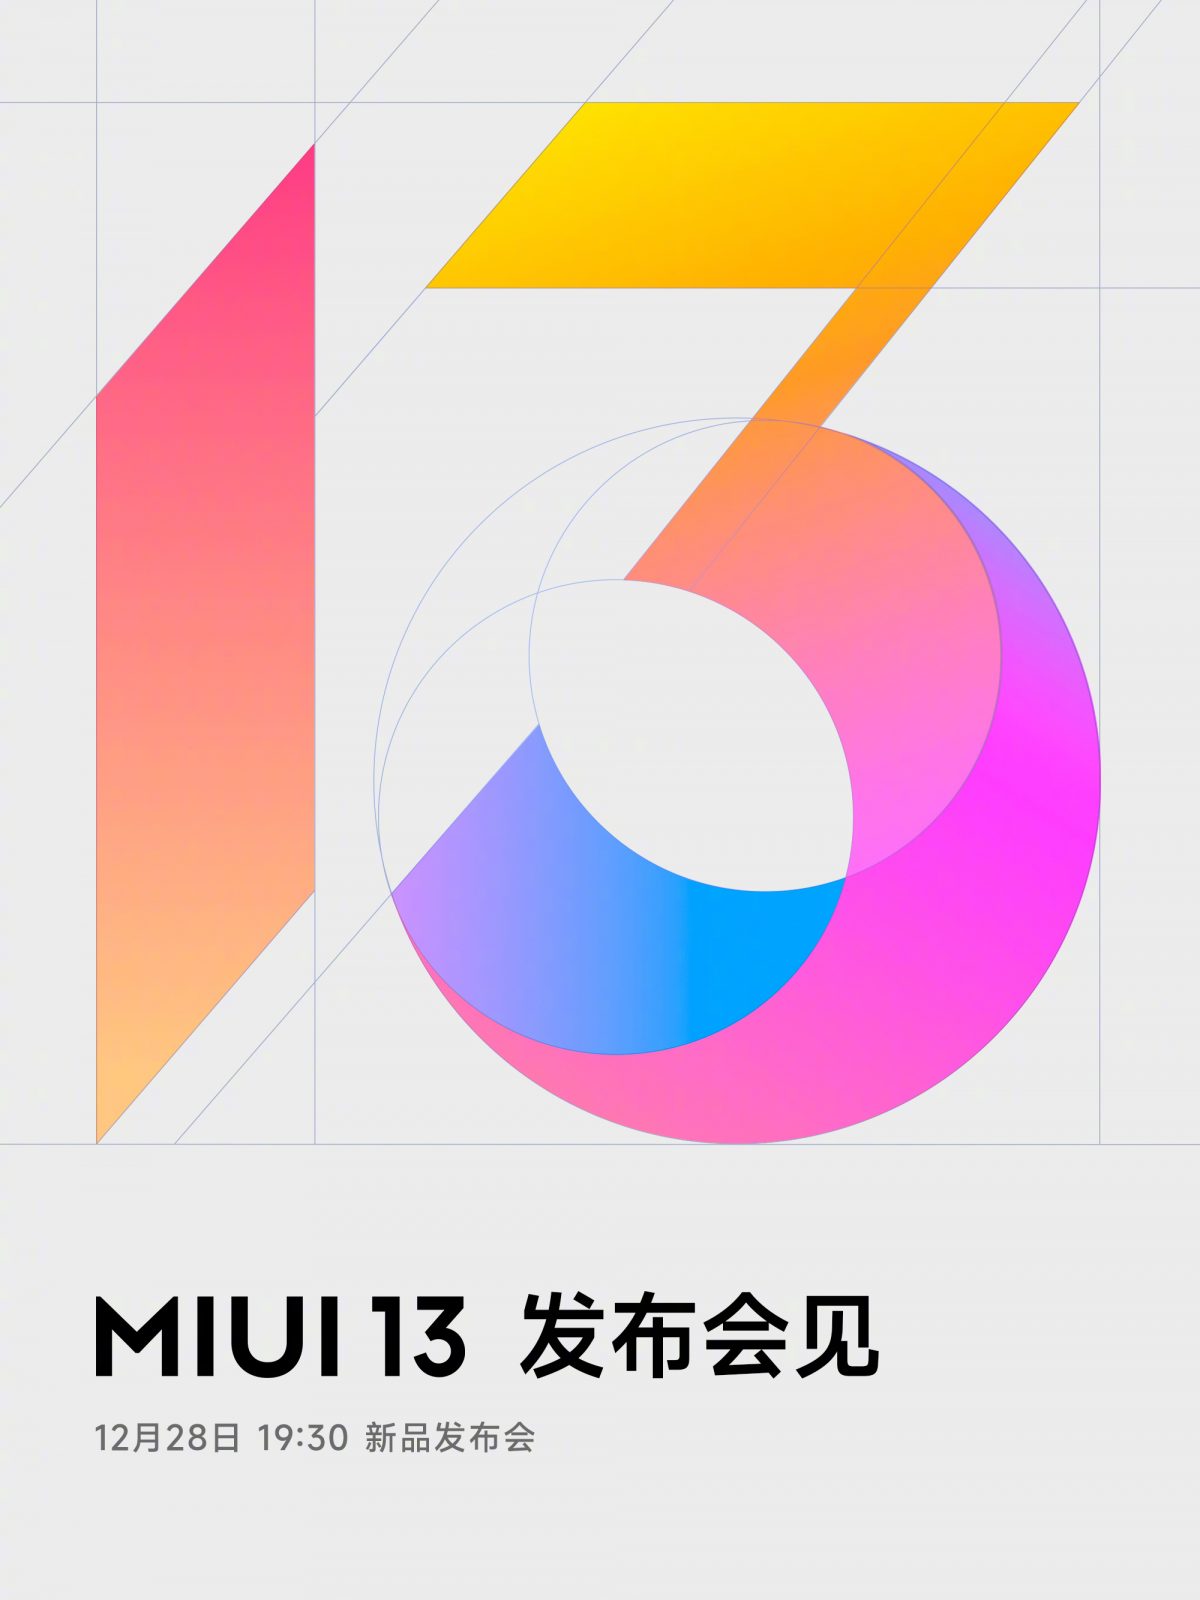 premiera MIUI 13 Pad nakładka Xiaomi co nowego nowości aktualizacja